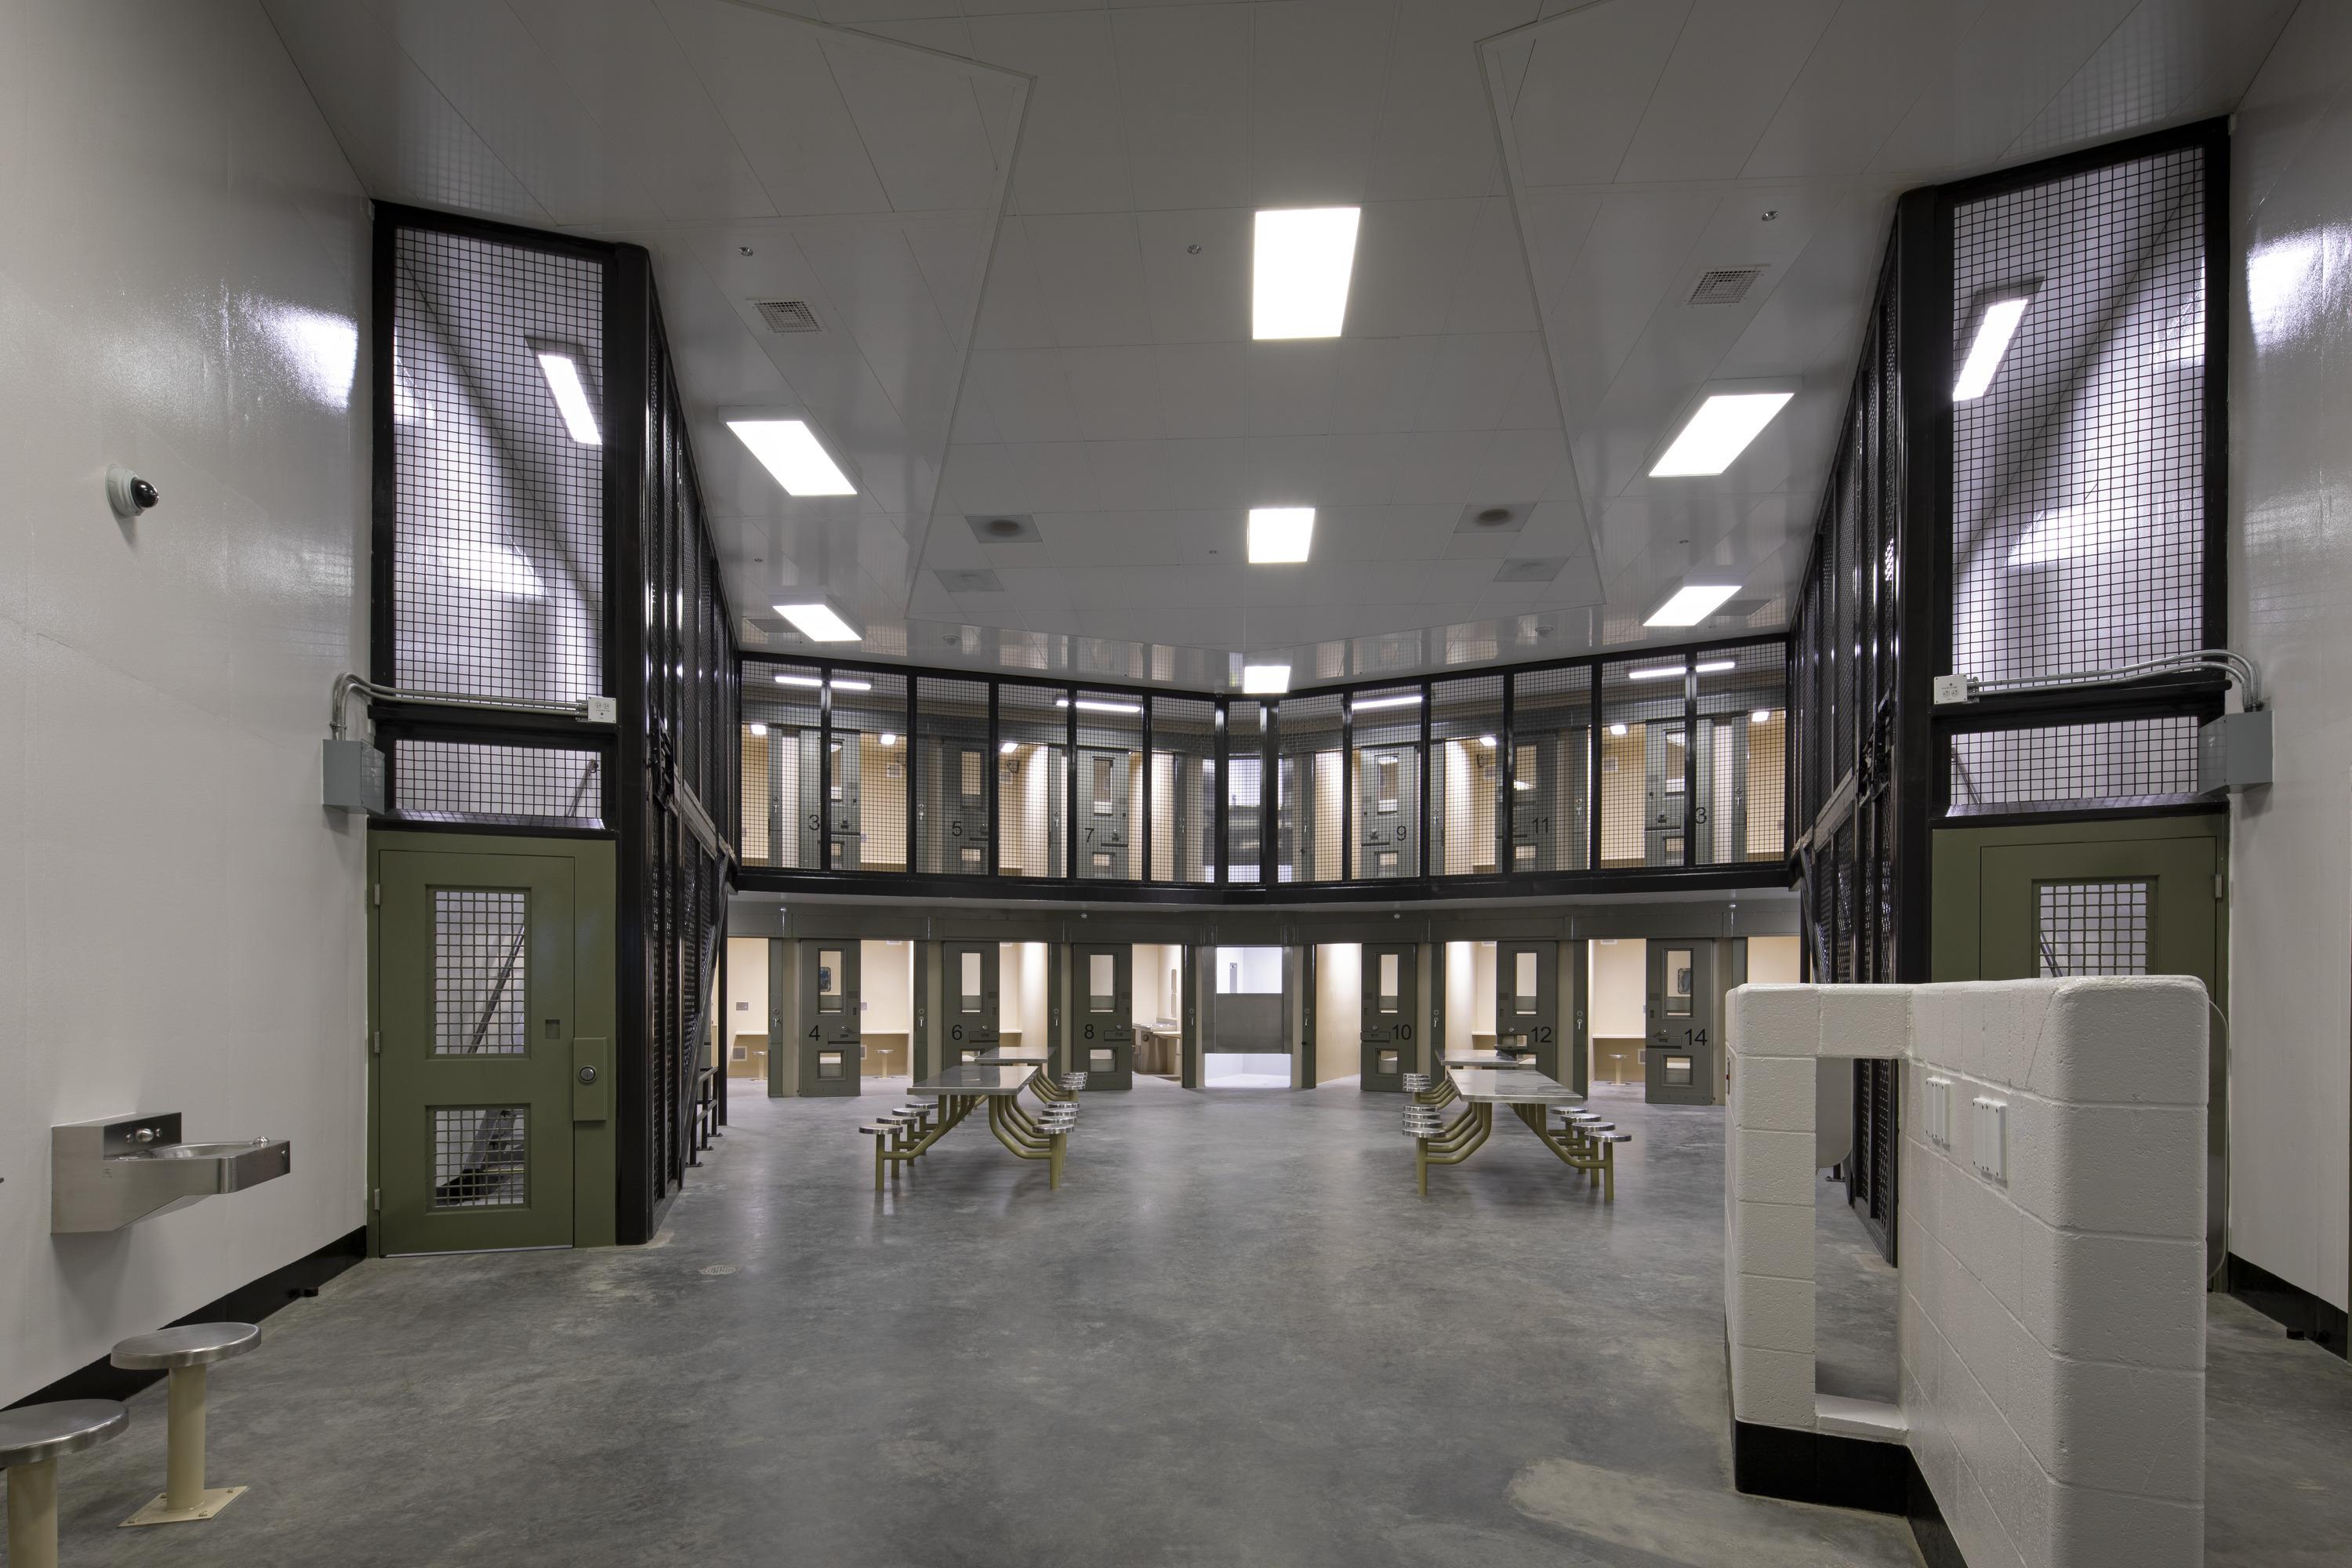 John J. Benoit Detention Center